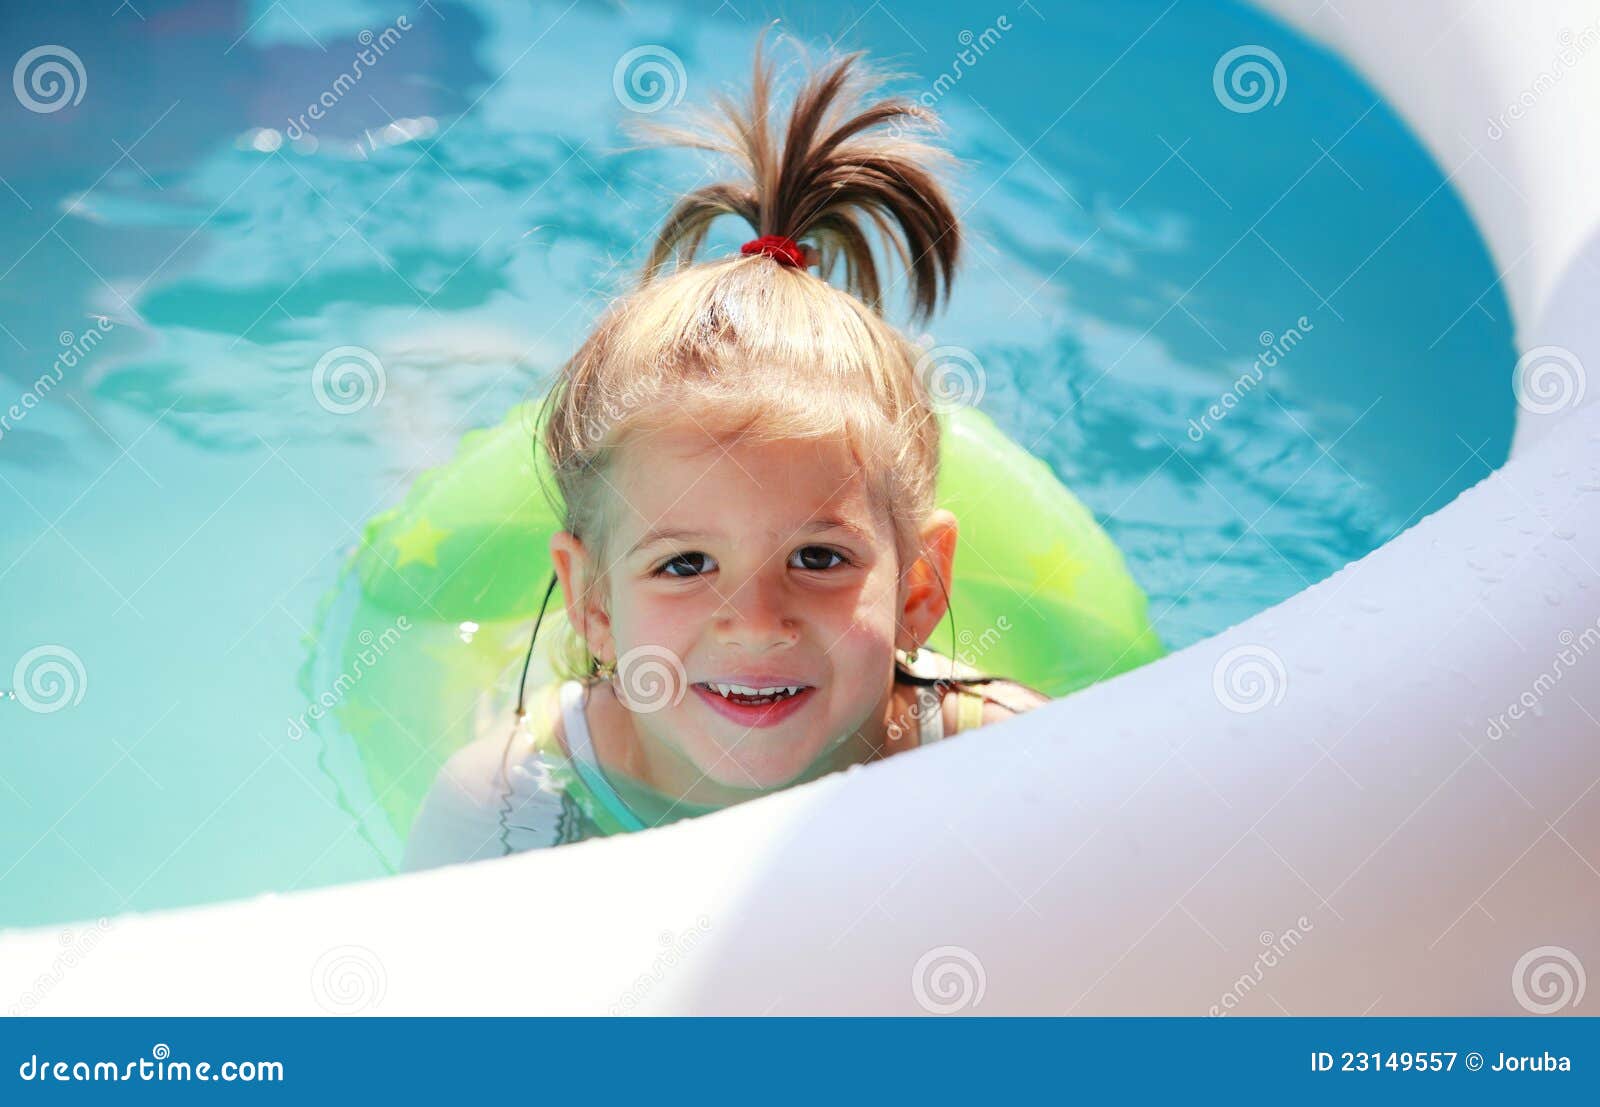 小男孩游泳背景图片-小男孩游泳背景素材下载-觅知网